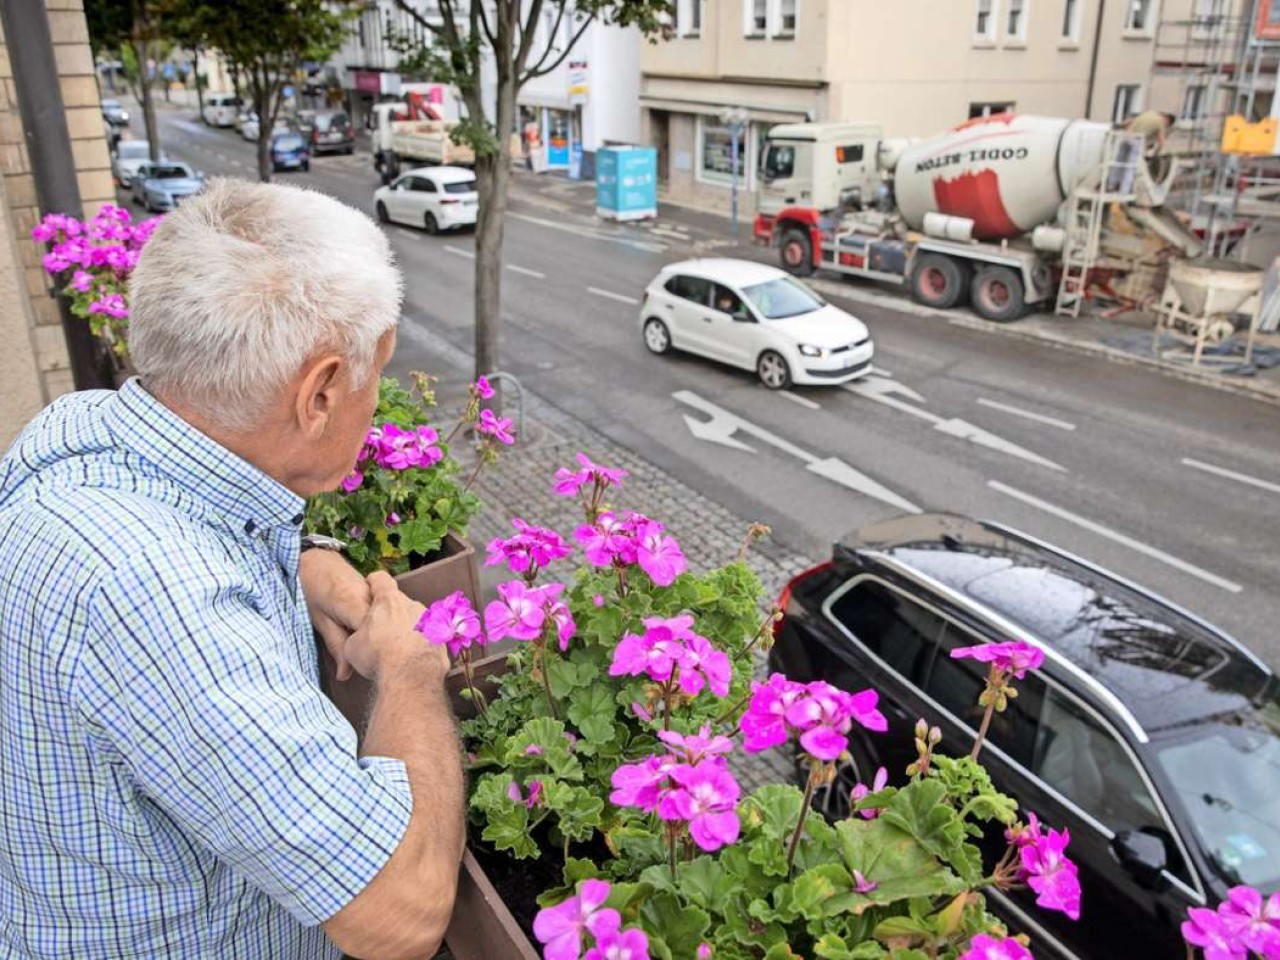 Wohnen in Fellbach: Balkonien klappt wegen Lärm nur sonntags